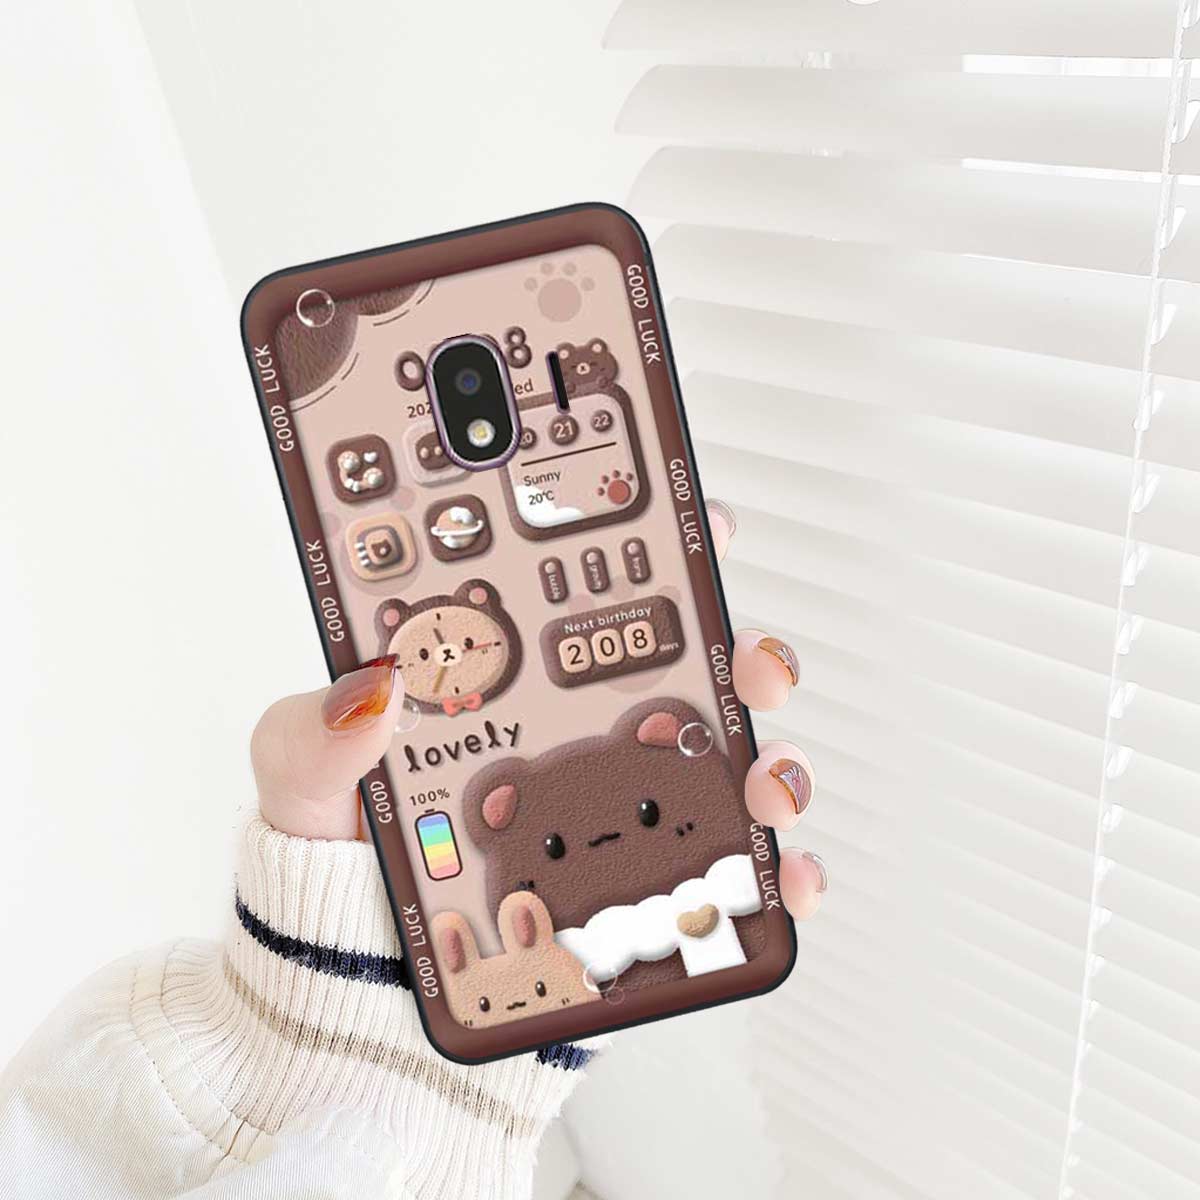 Hãy xem hình ảnh ốp Xinh Cute đáng yêu này để tạo nét độc đáo và dễ thương cho chiếc điện thoại của bạn.